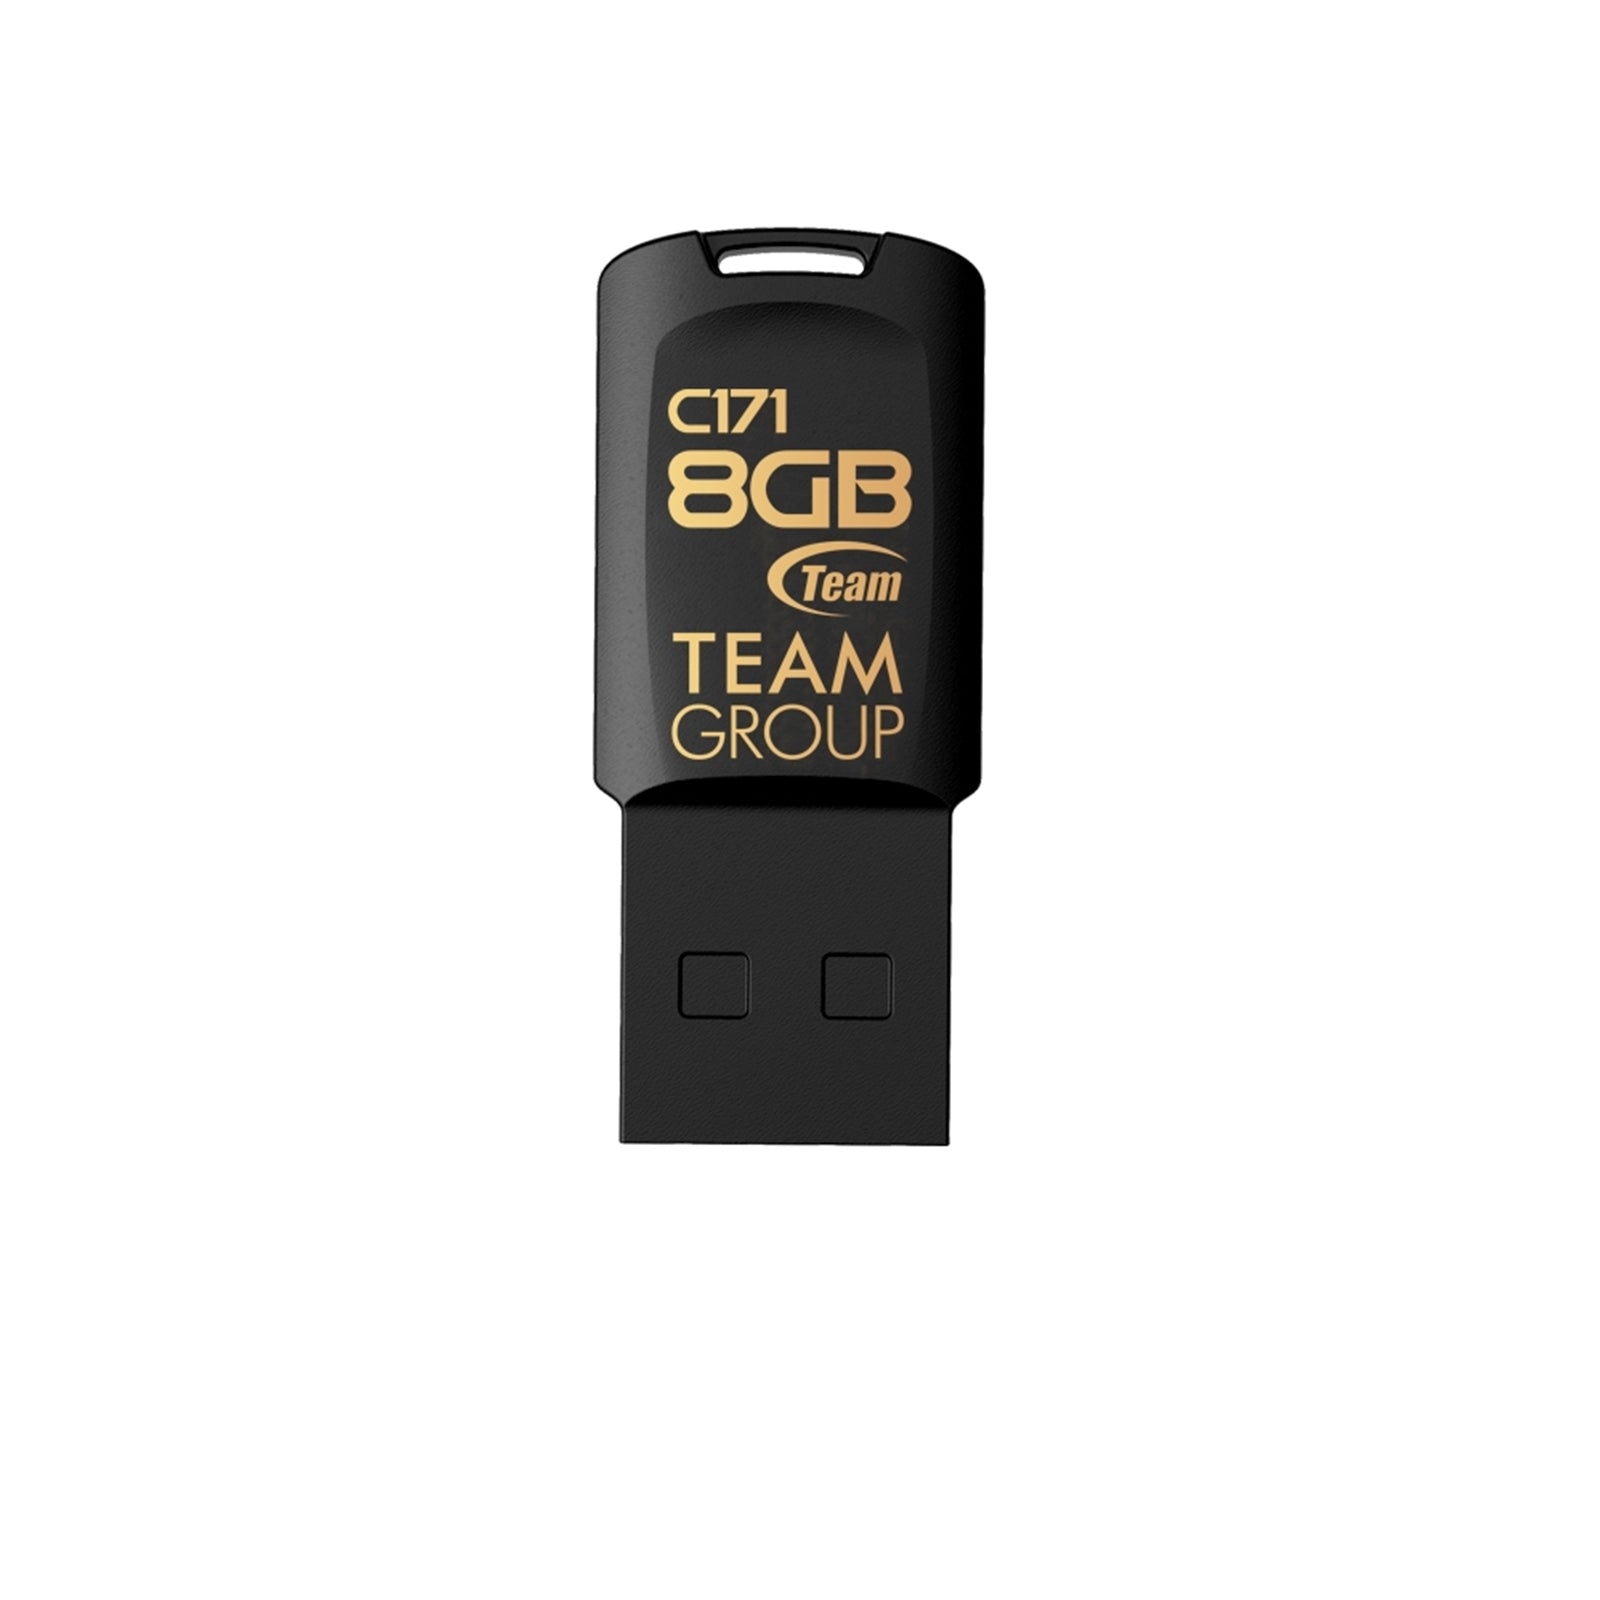 Team USB 2.0 C171 8GB USB Flash Drive Black